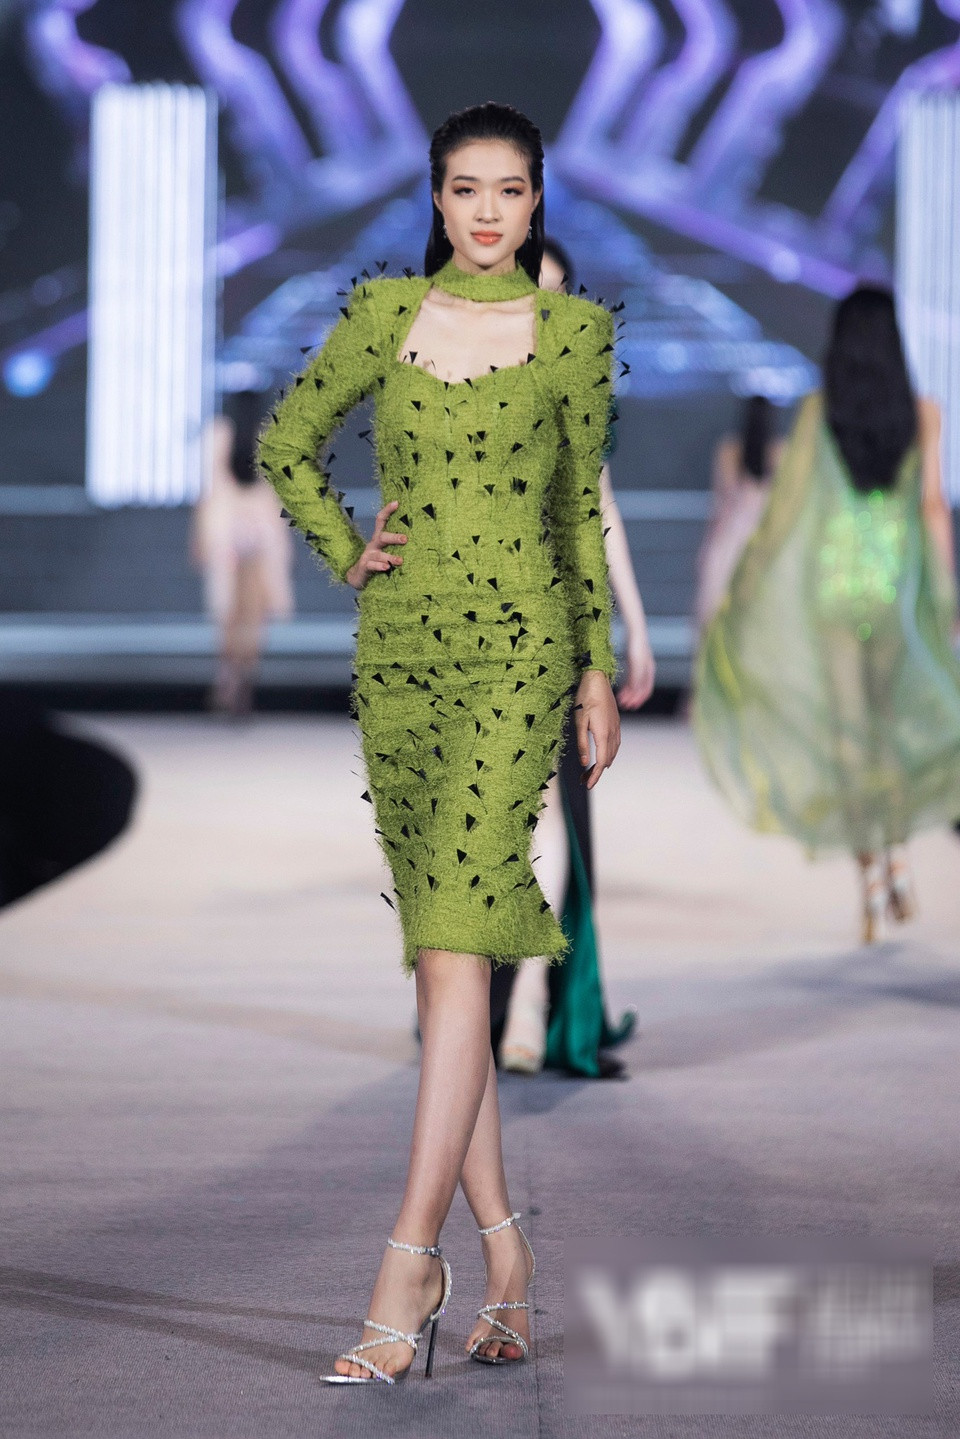 Hồ Thị Yến Nhi cao 1m80, hiện cũng là thí sinh của Hoa hậu Thế giới Việt Nam 2022.